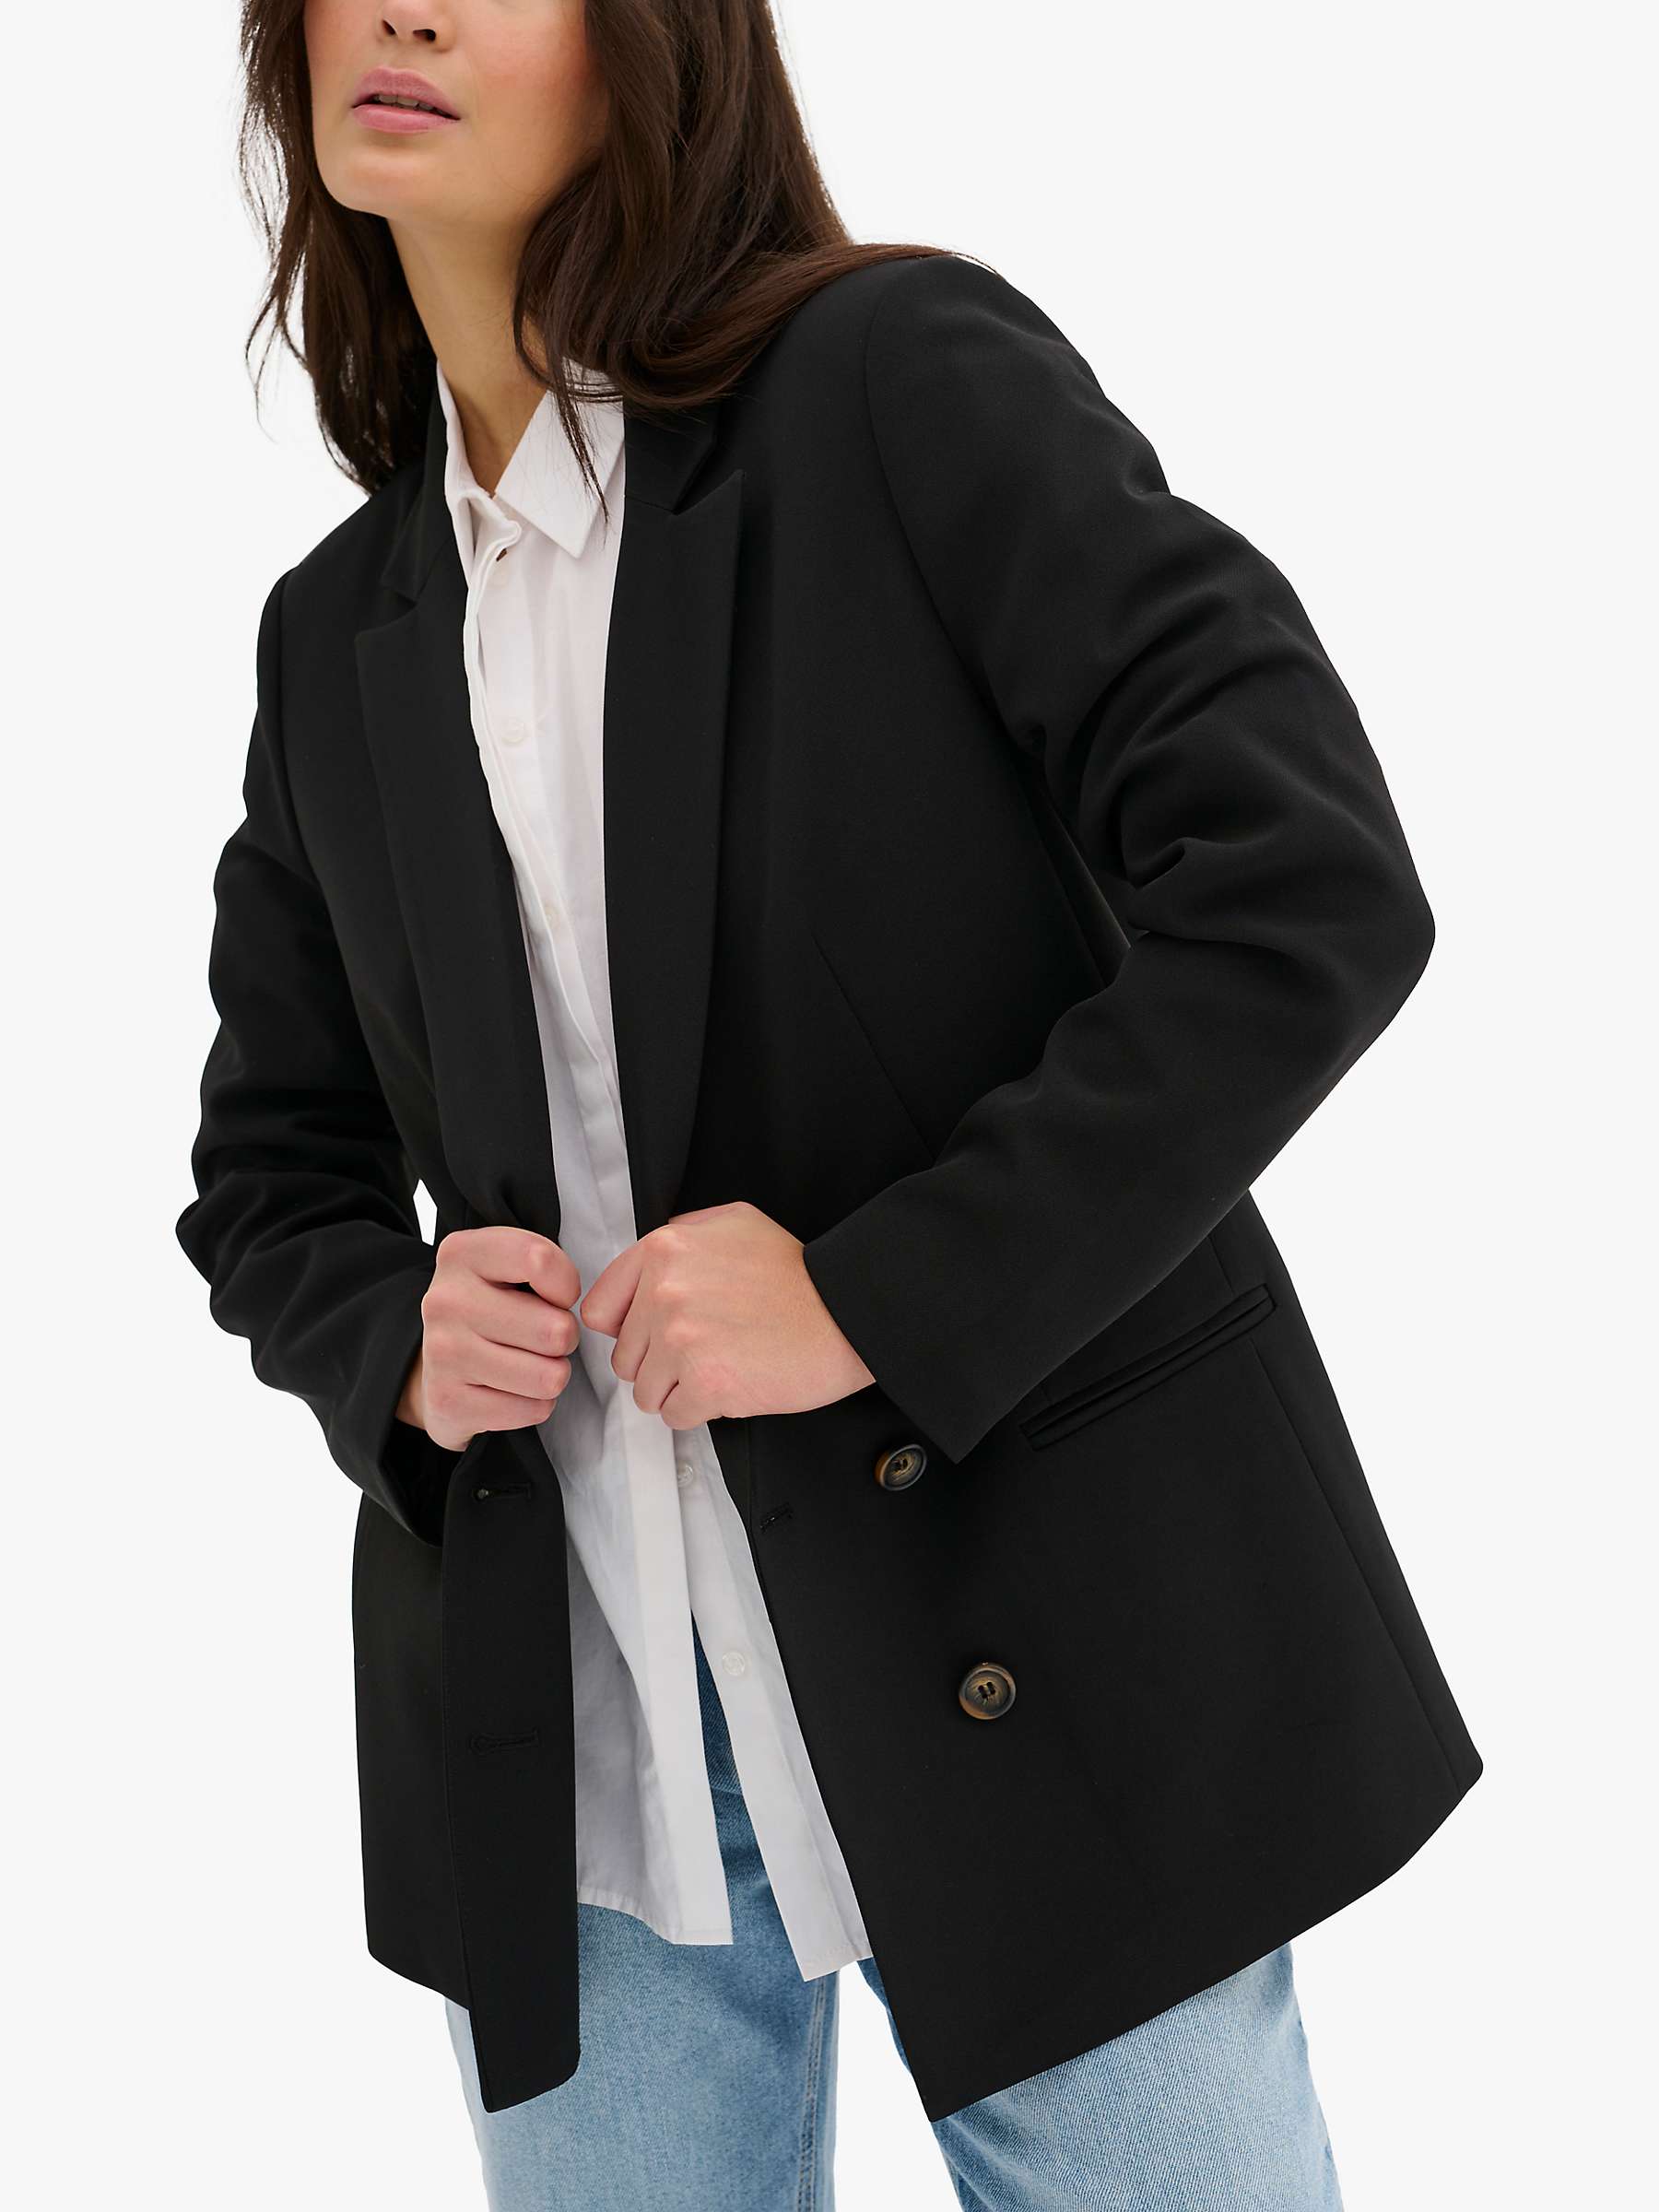 Buy MY ESSENTIAL WARDROBE Tailored Blazer, Black Online at johnlewis.com